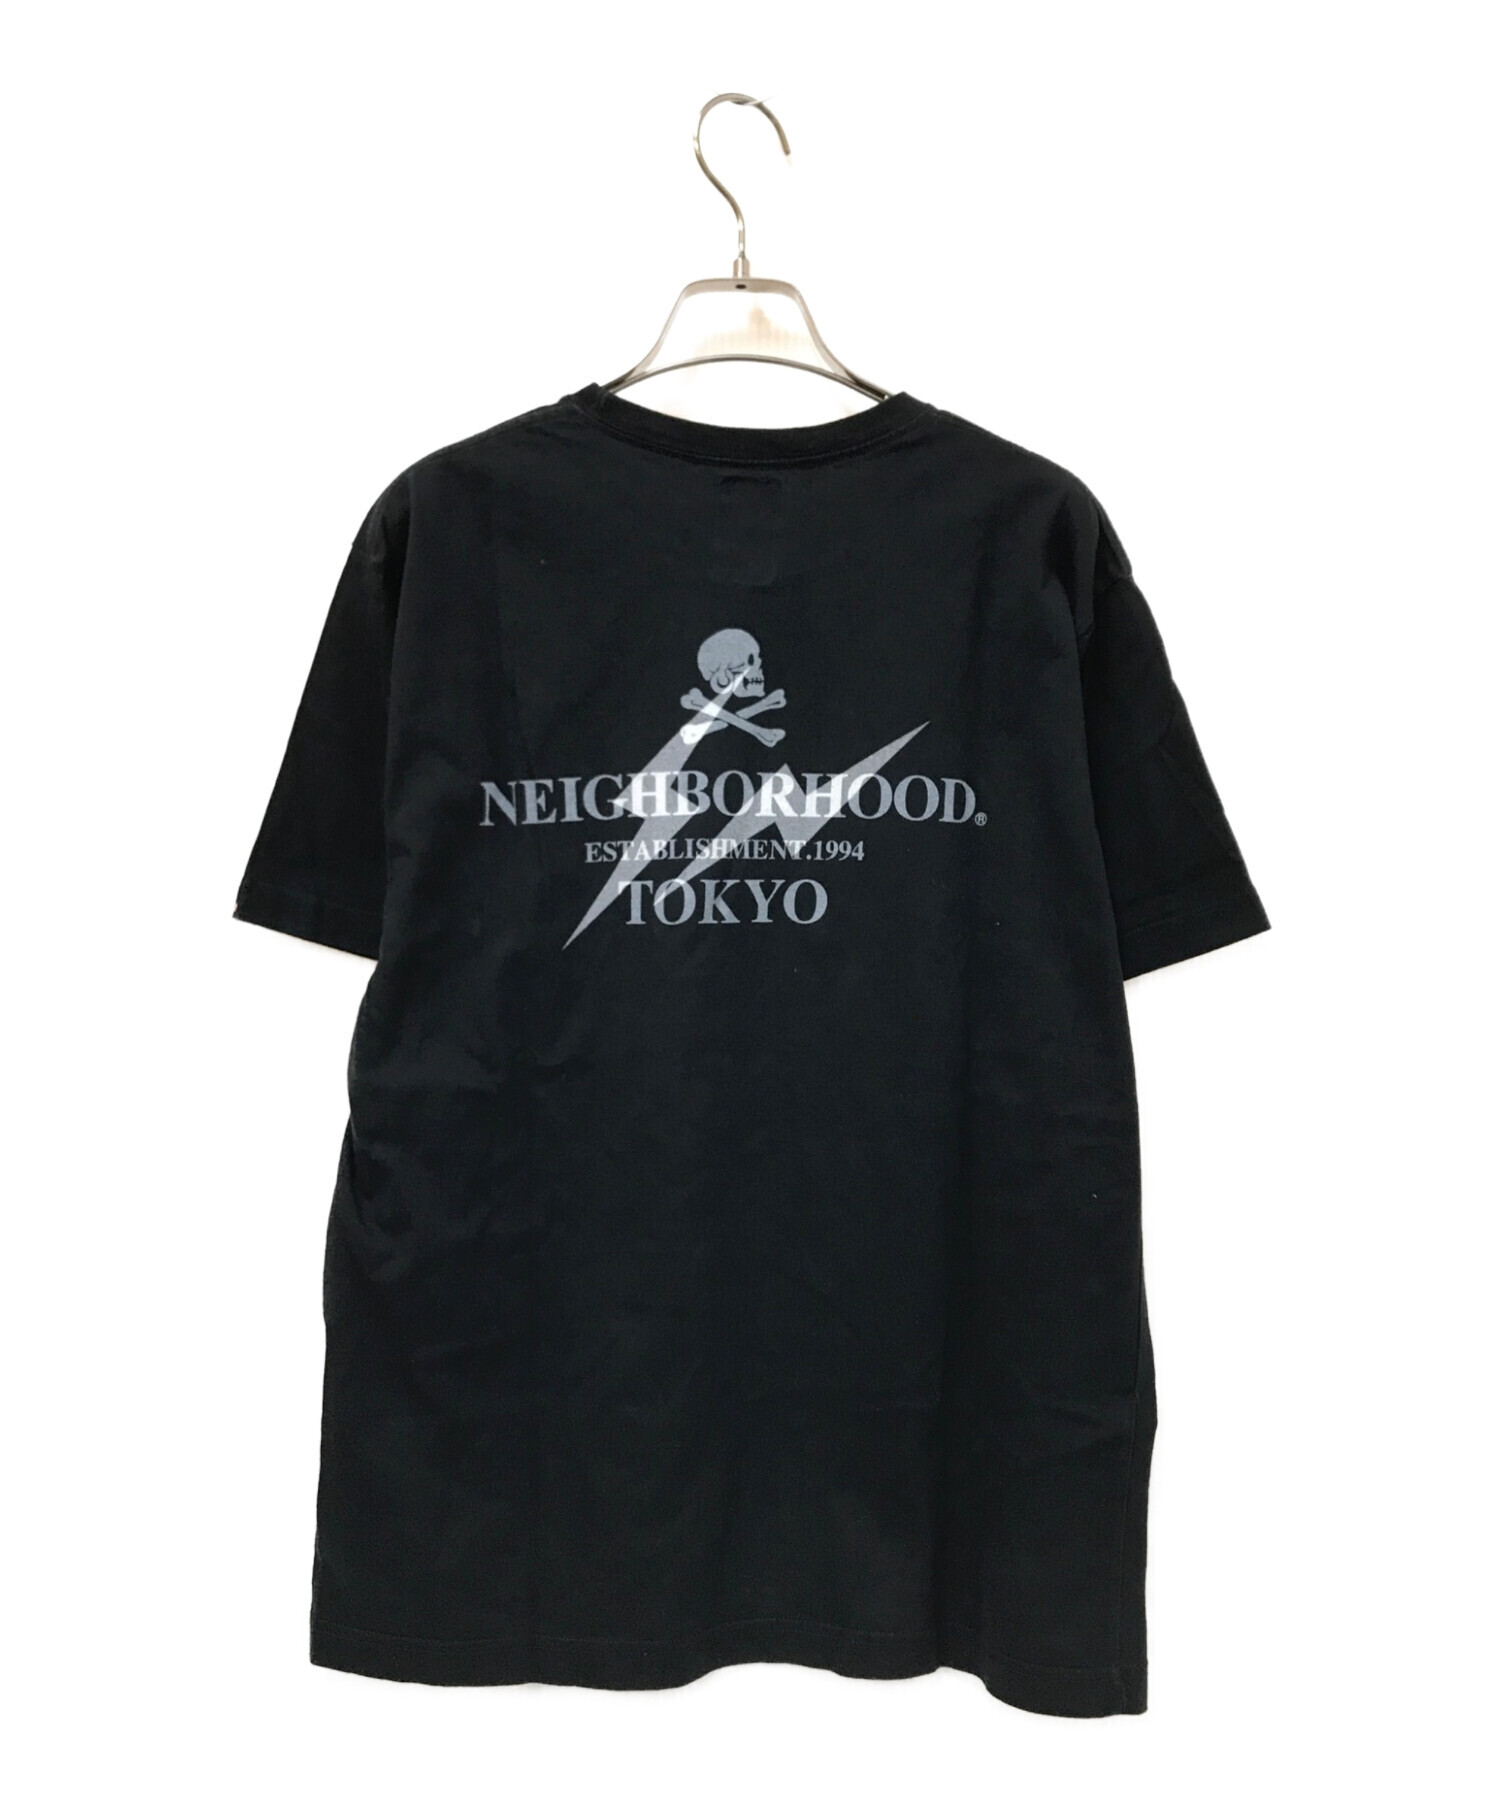 安い x NEIGHBORHOOD fragmentdesign Tシャツ 初代コラボ トップス 